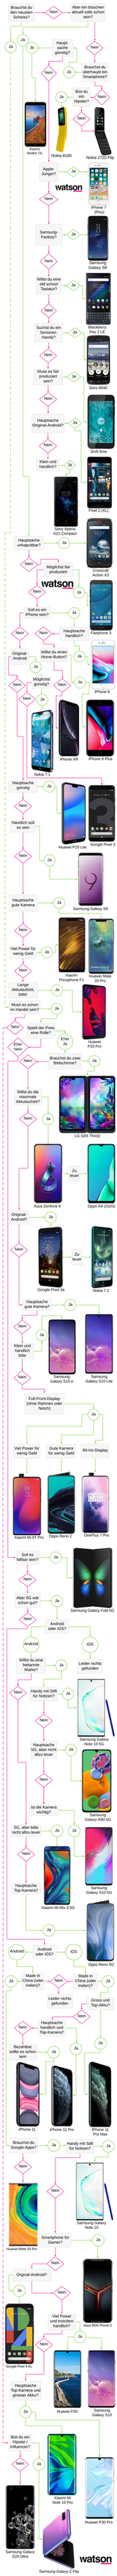 Hinweis: Das Samsung Galaxy Z Flip ist inzwischen verfügbar.